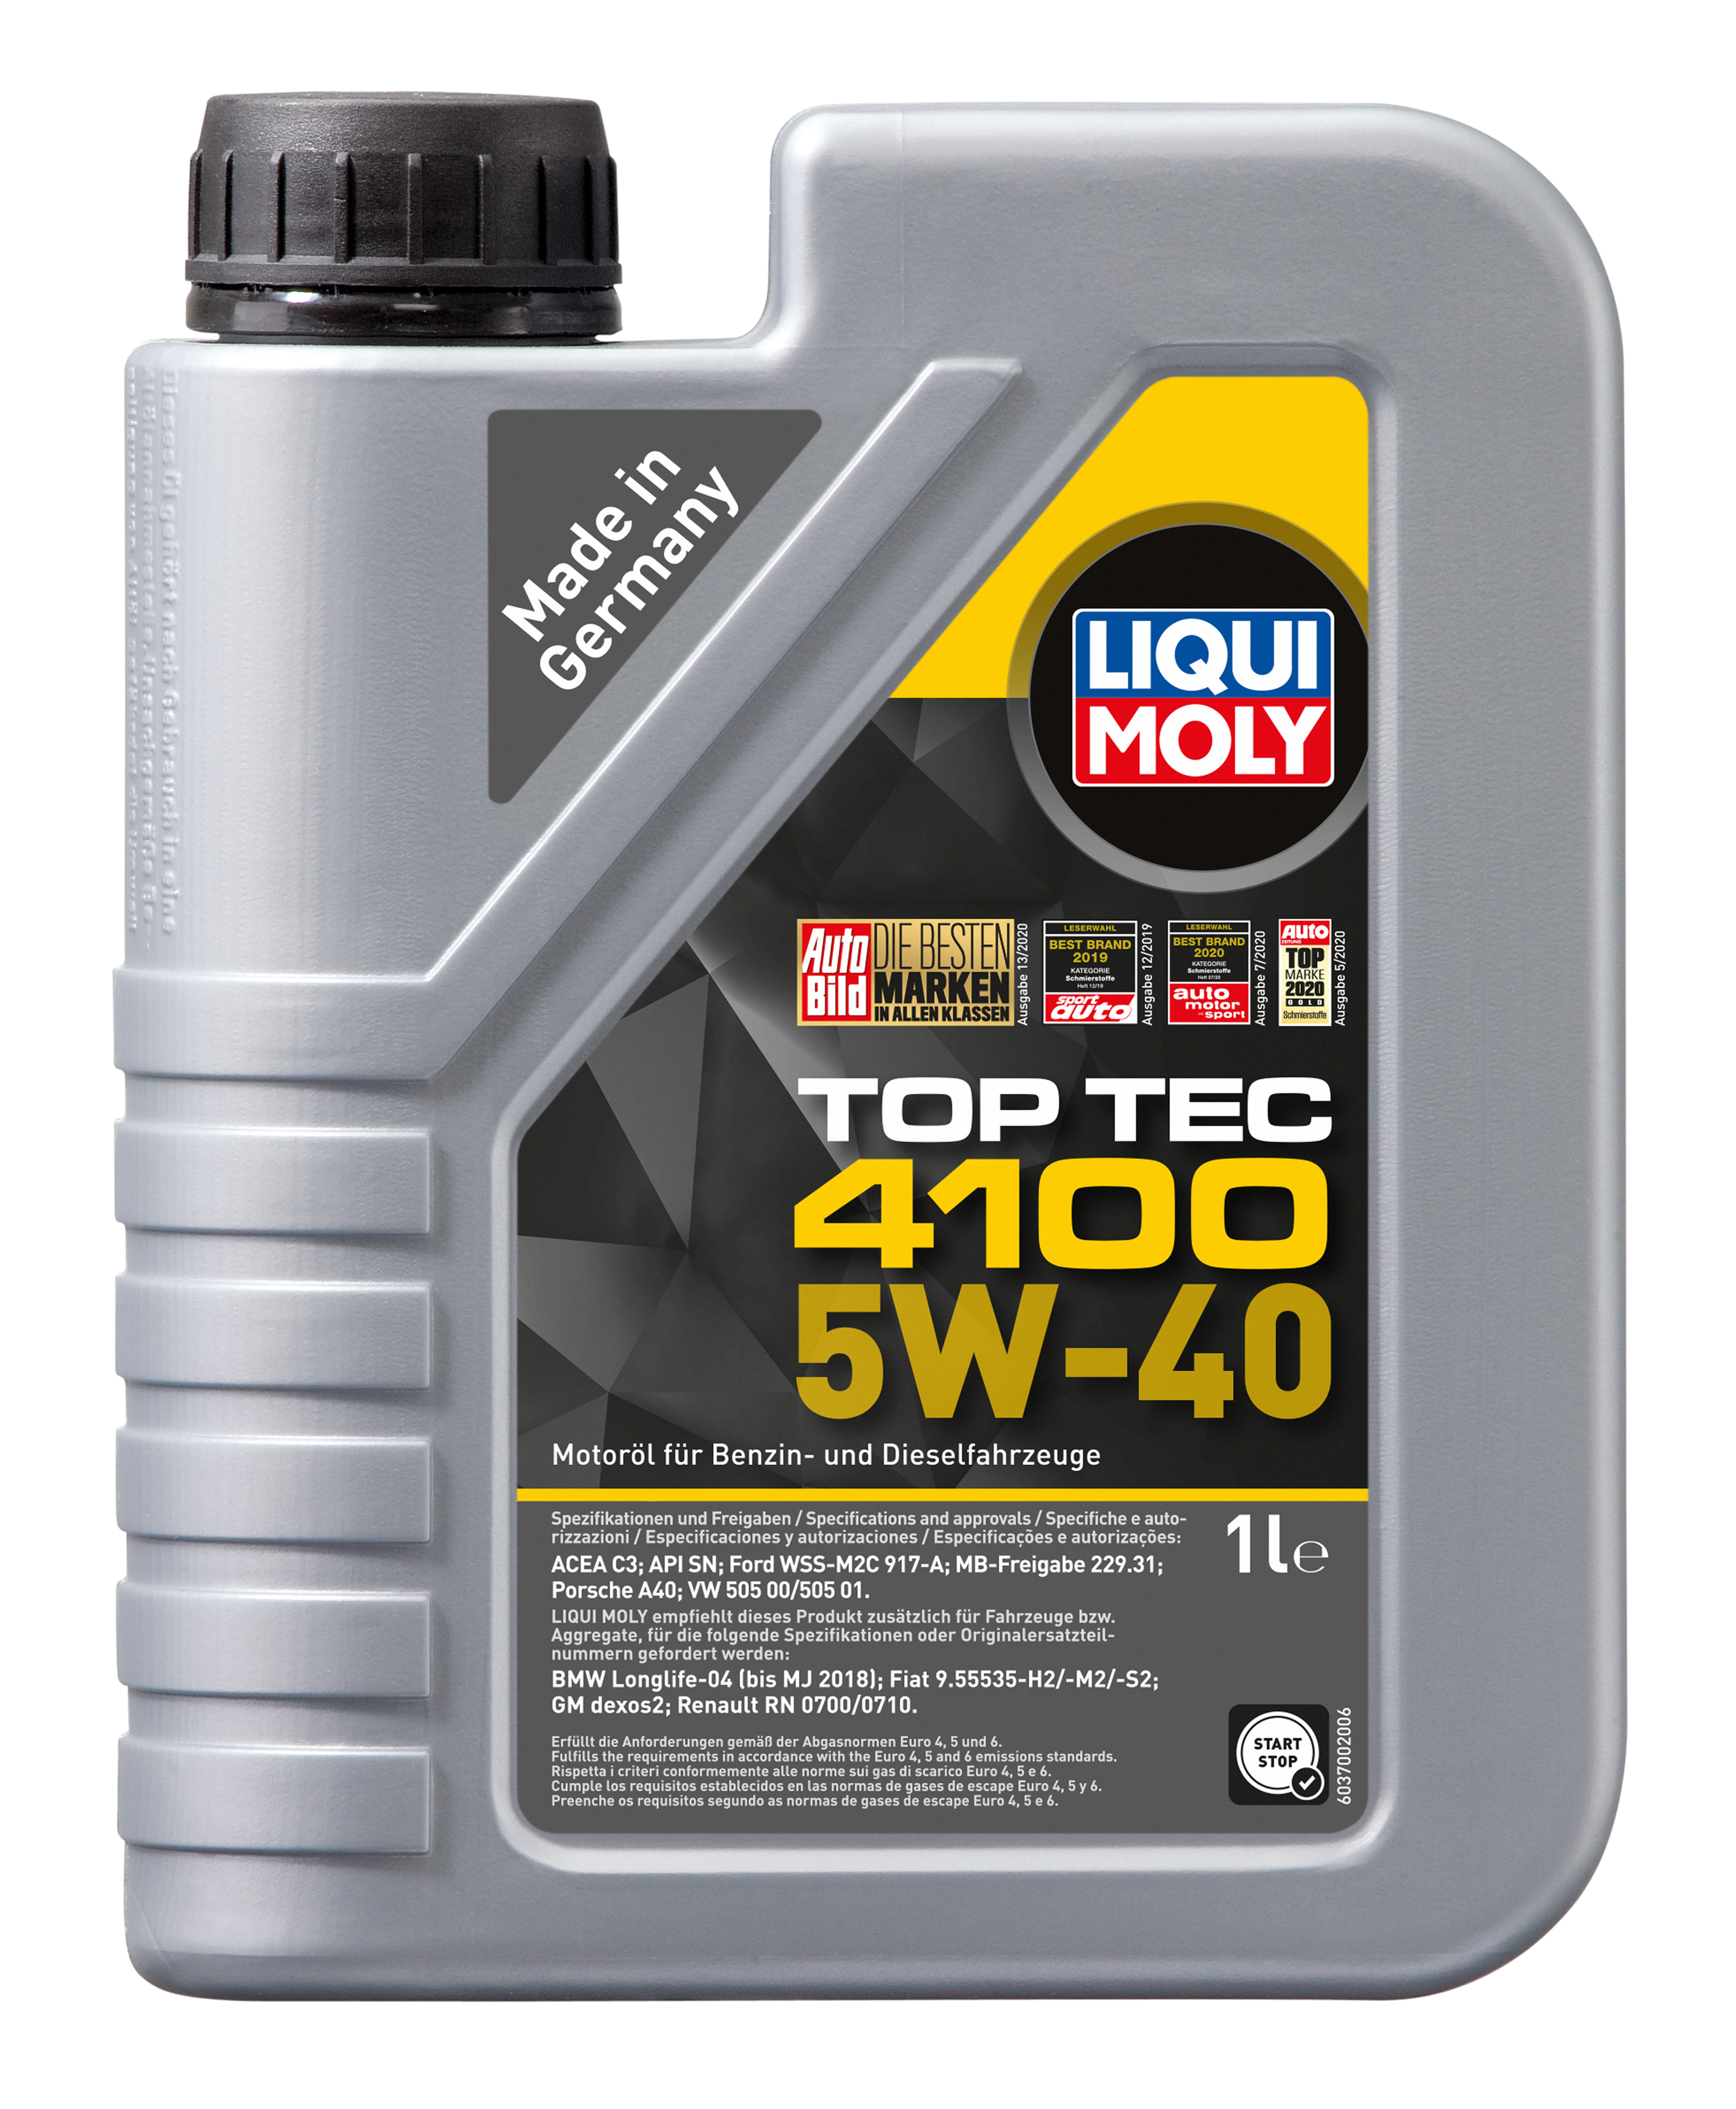 5W-40 Liqui Moly 3700 Top Tec 4100 Motoröl 1 Liter